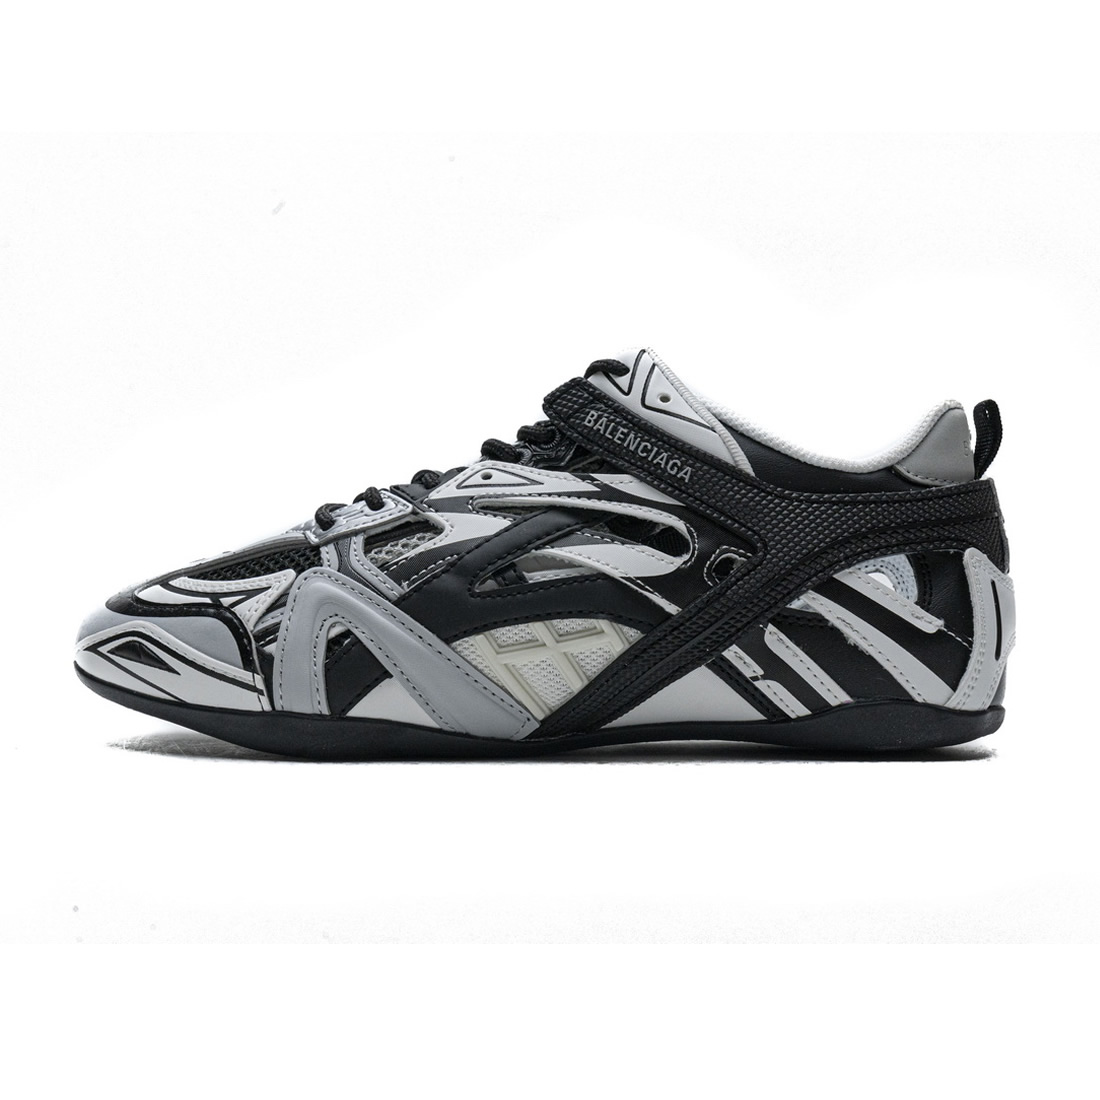 Balenciaga Drive Sneaker Grey Black 624343w2fd11019 1 - www.kickbulk.cc